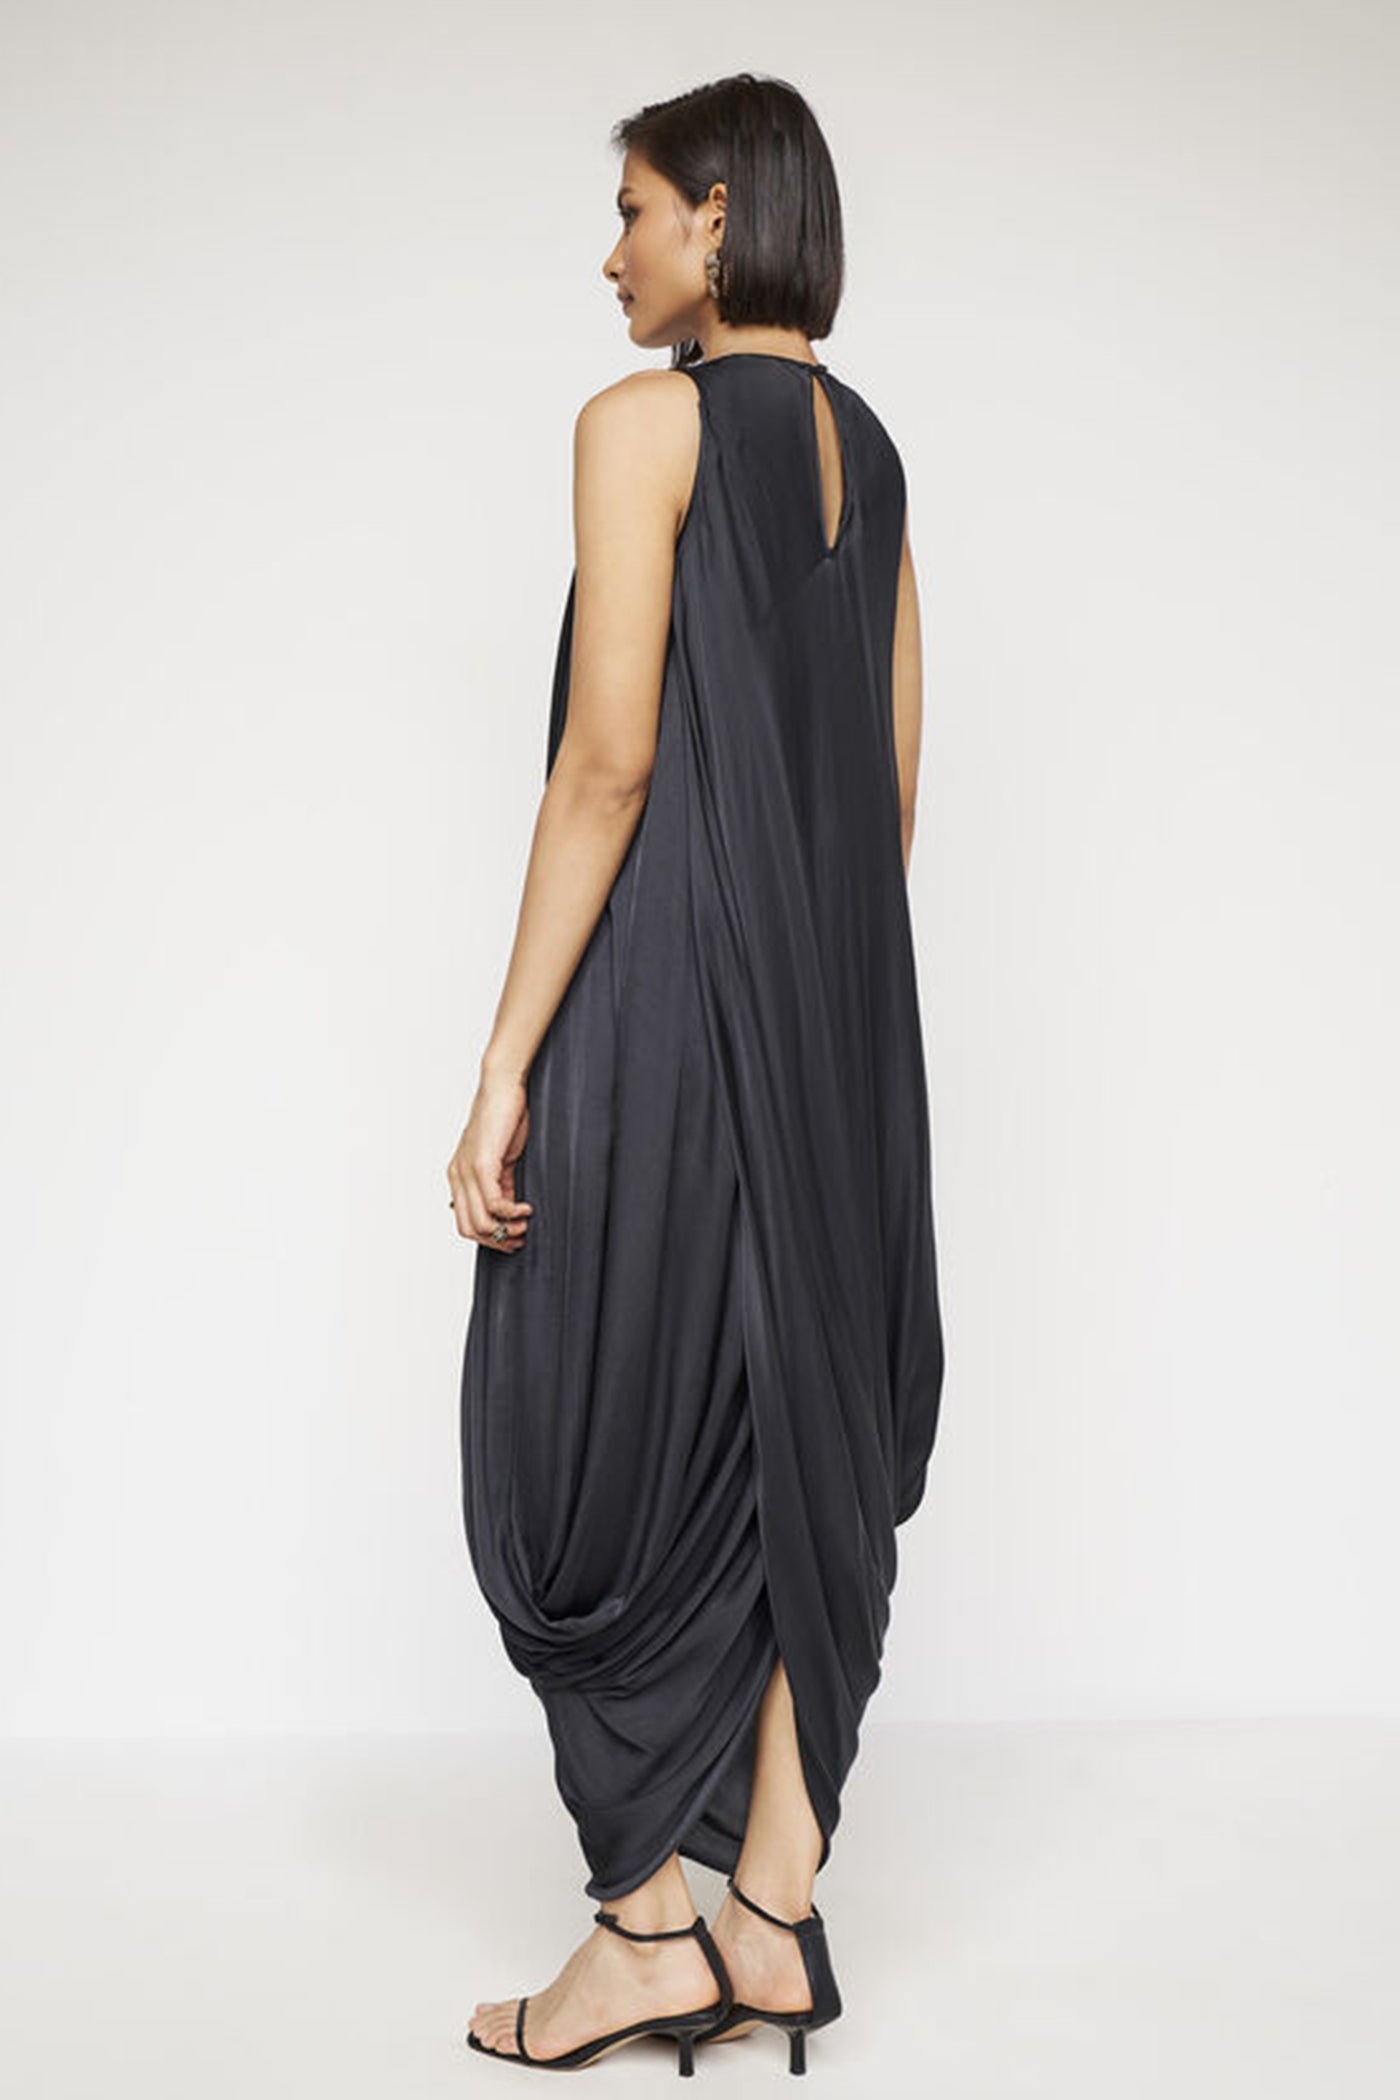 Anita Dongre Jules Dhoti Dress Black western indian designer wear online shopping melange singapore